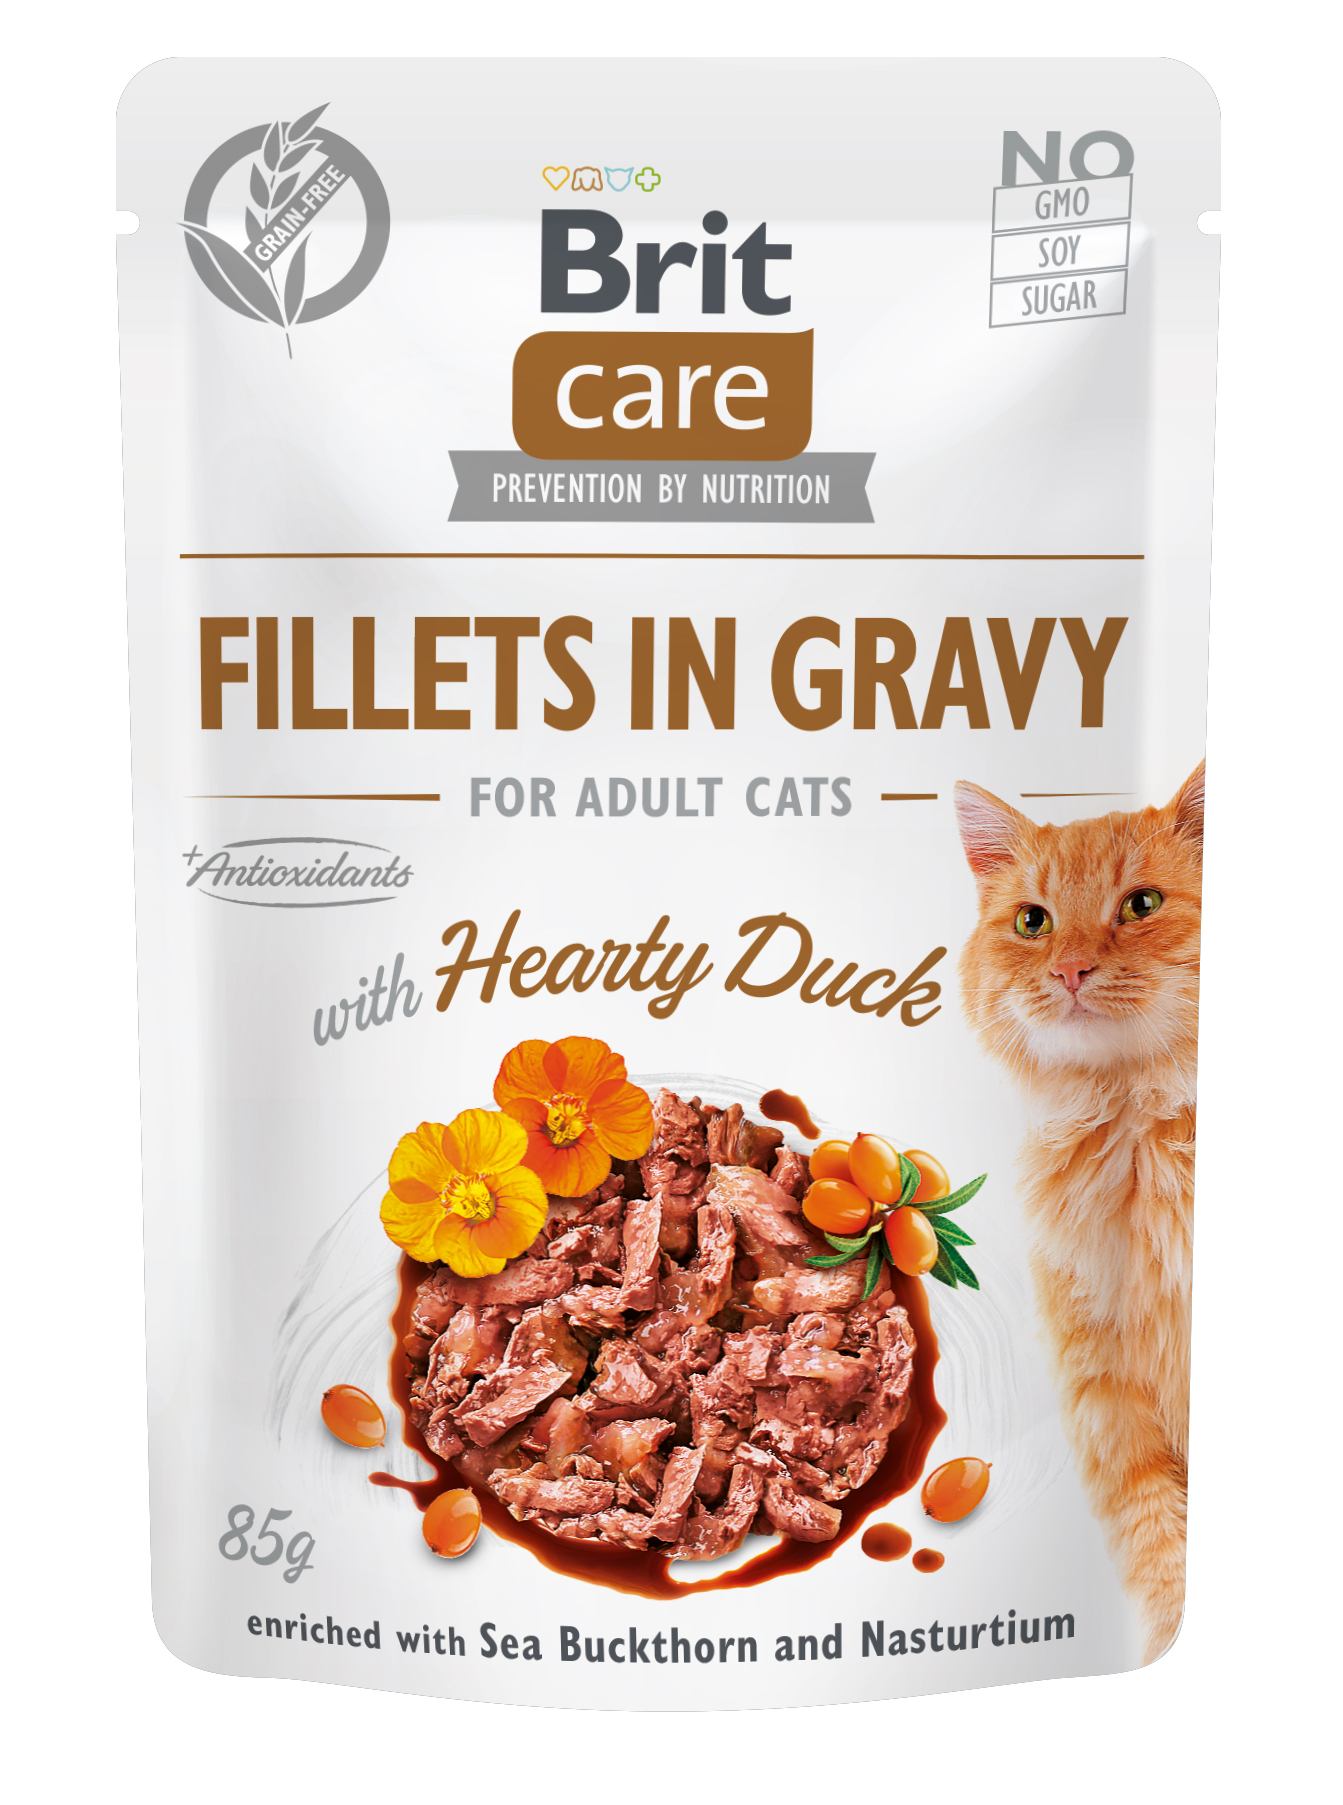 Беззерновой влажный корм для кошек Brit Care Cat pouch, с уткой, 85 г - фото 1